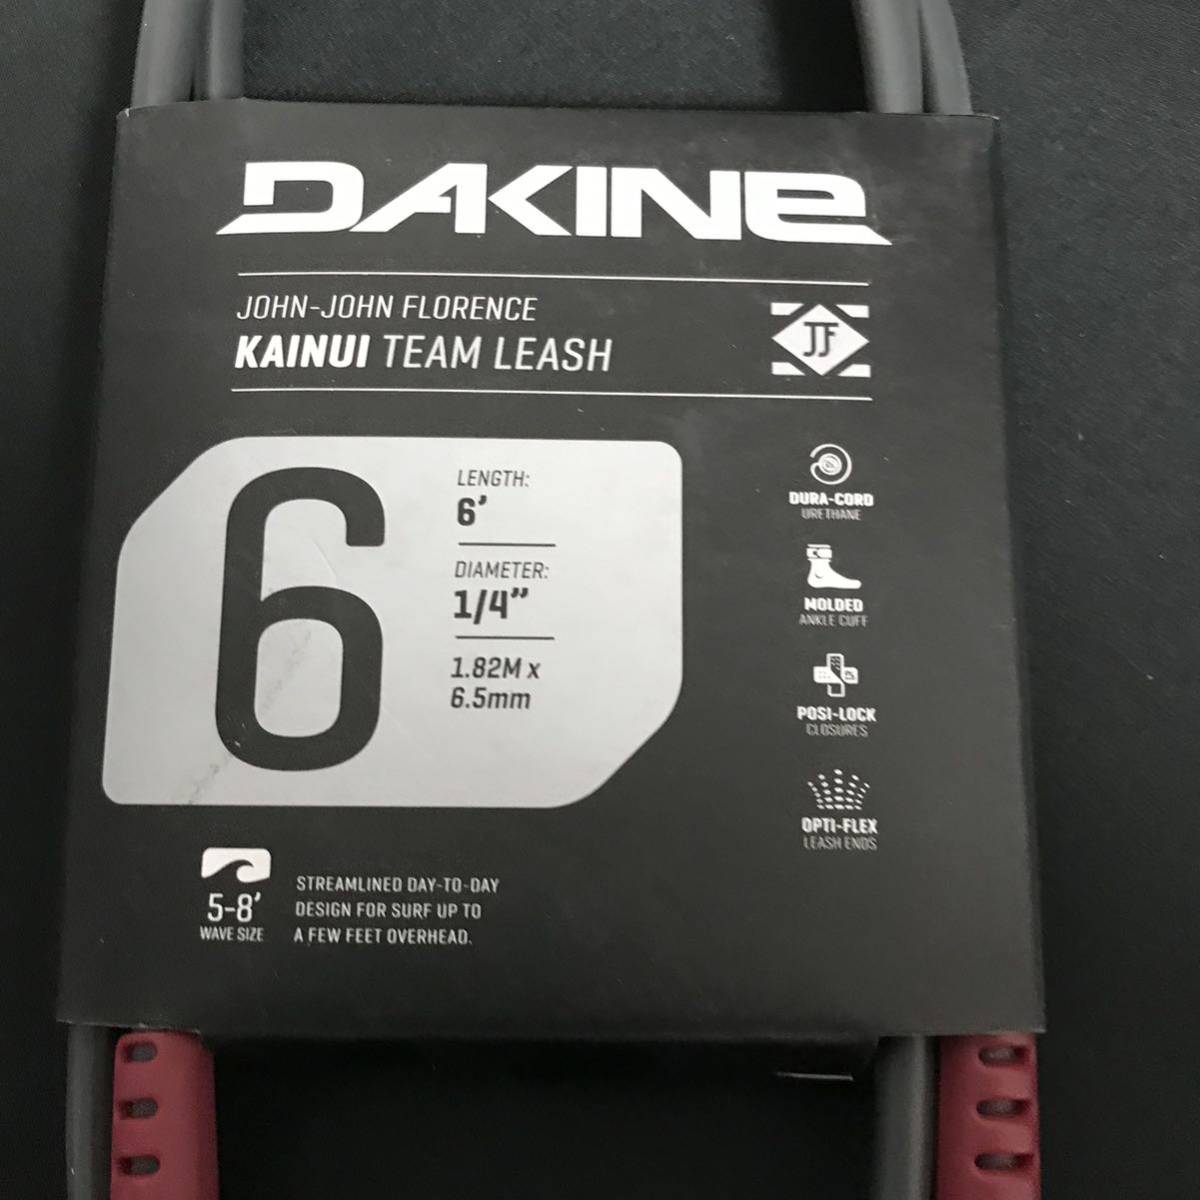 DAKINE 6ft レギュラー ショートボード リーシュコード ダカイン パワーコード FCS